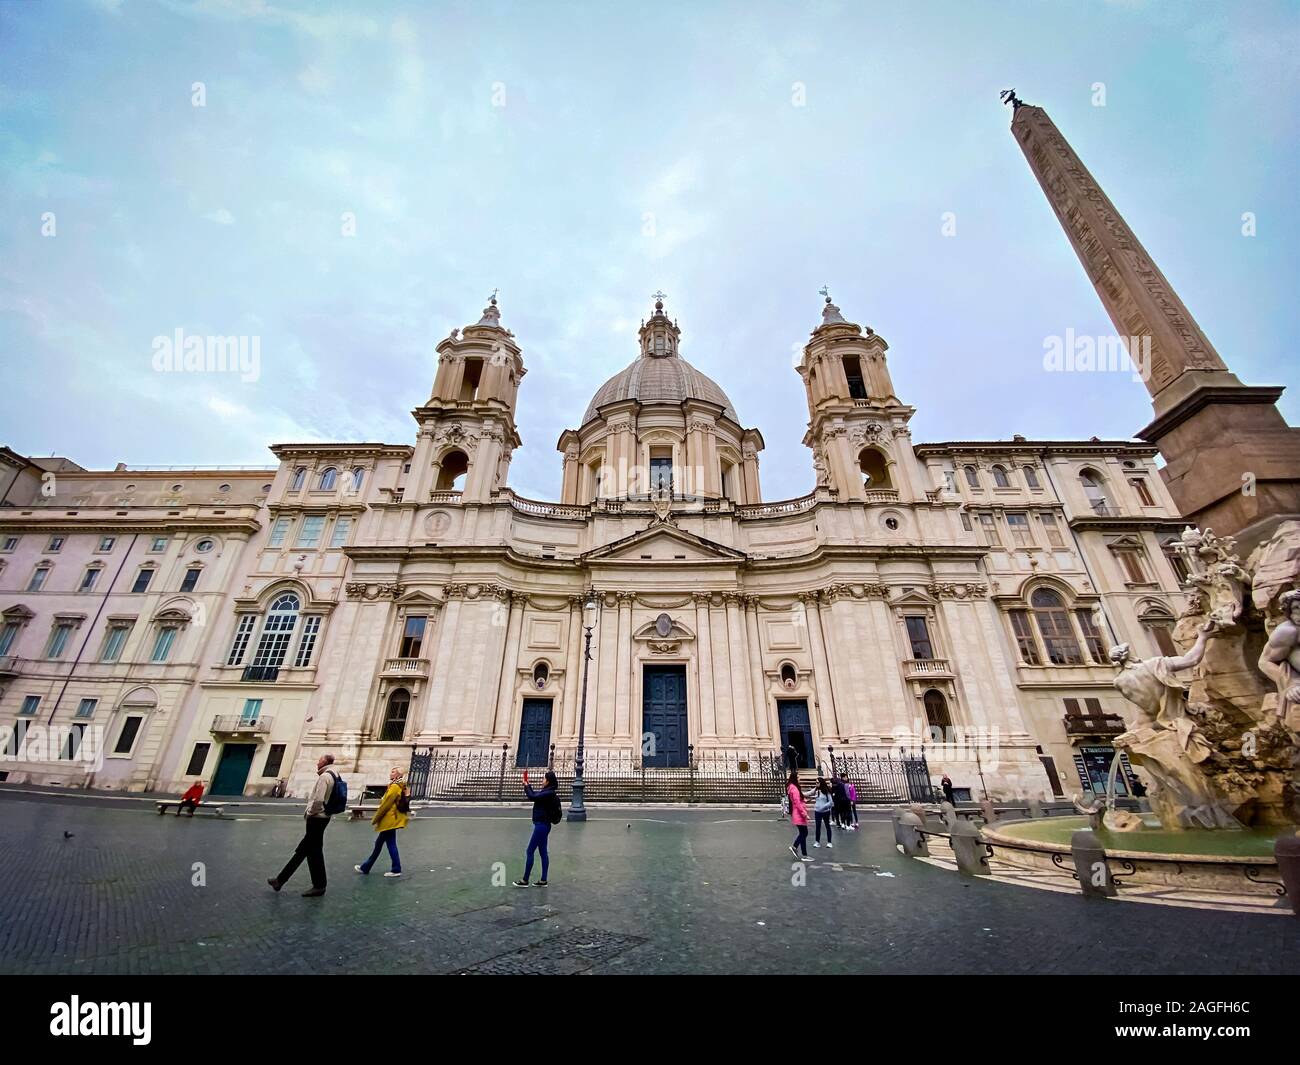 Rome, Italie, le 12 novembre 2019 : façade de l'église baroque de Sant'Agnese in Agone sur la Piazza Navona, dans le centre historique de Rome avec des gens s Banque D'Images